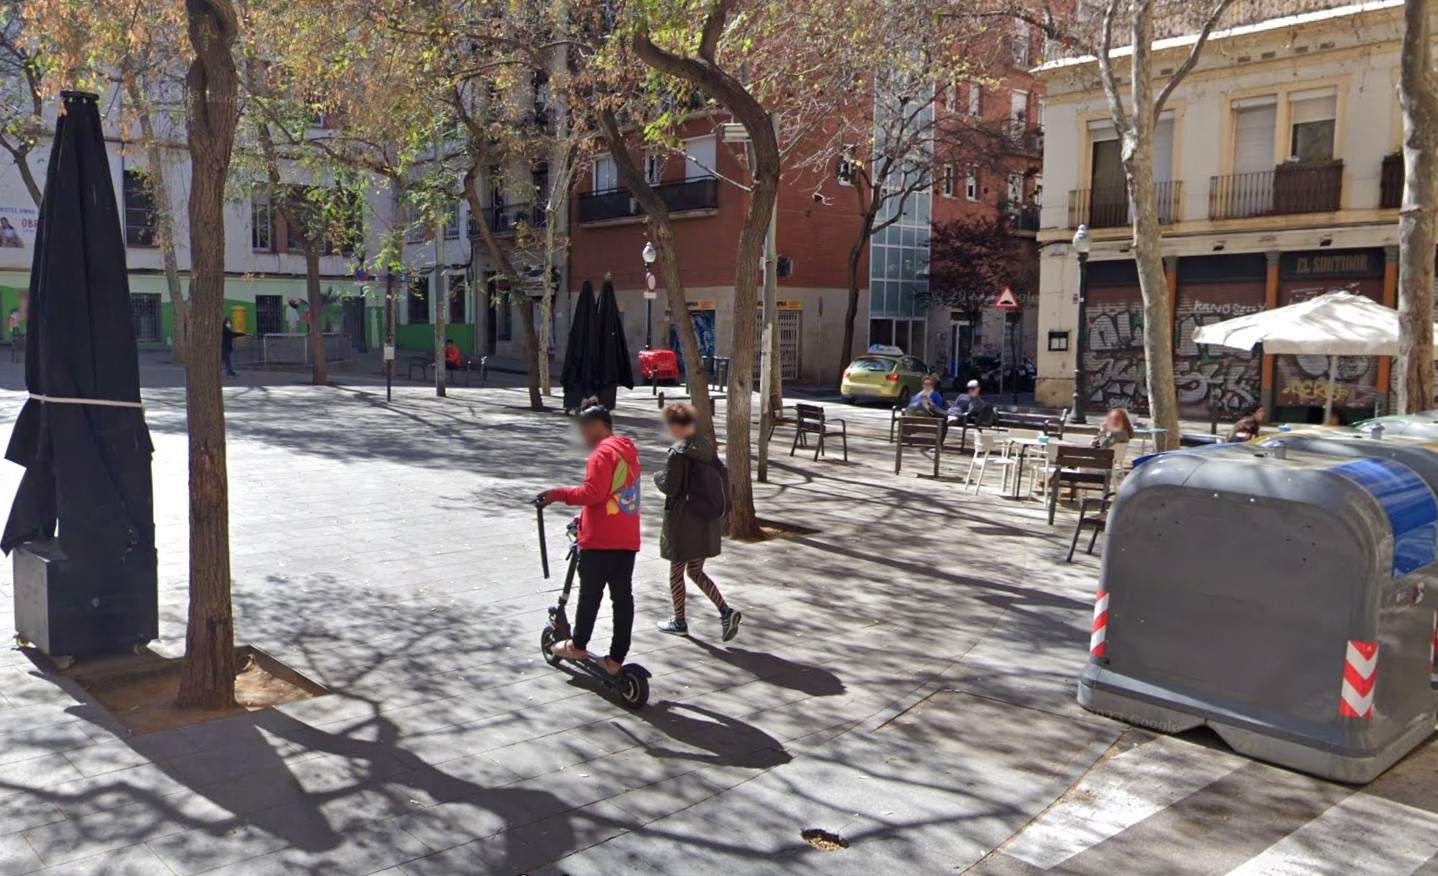 Plaça Sortidor Poble sec Barcelona Google Street View